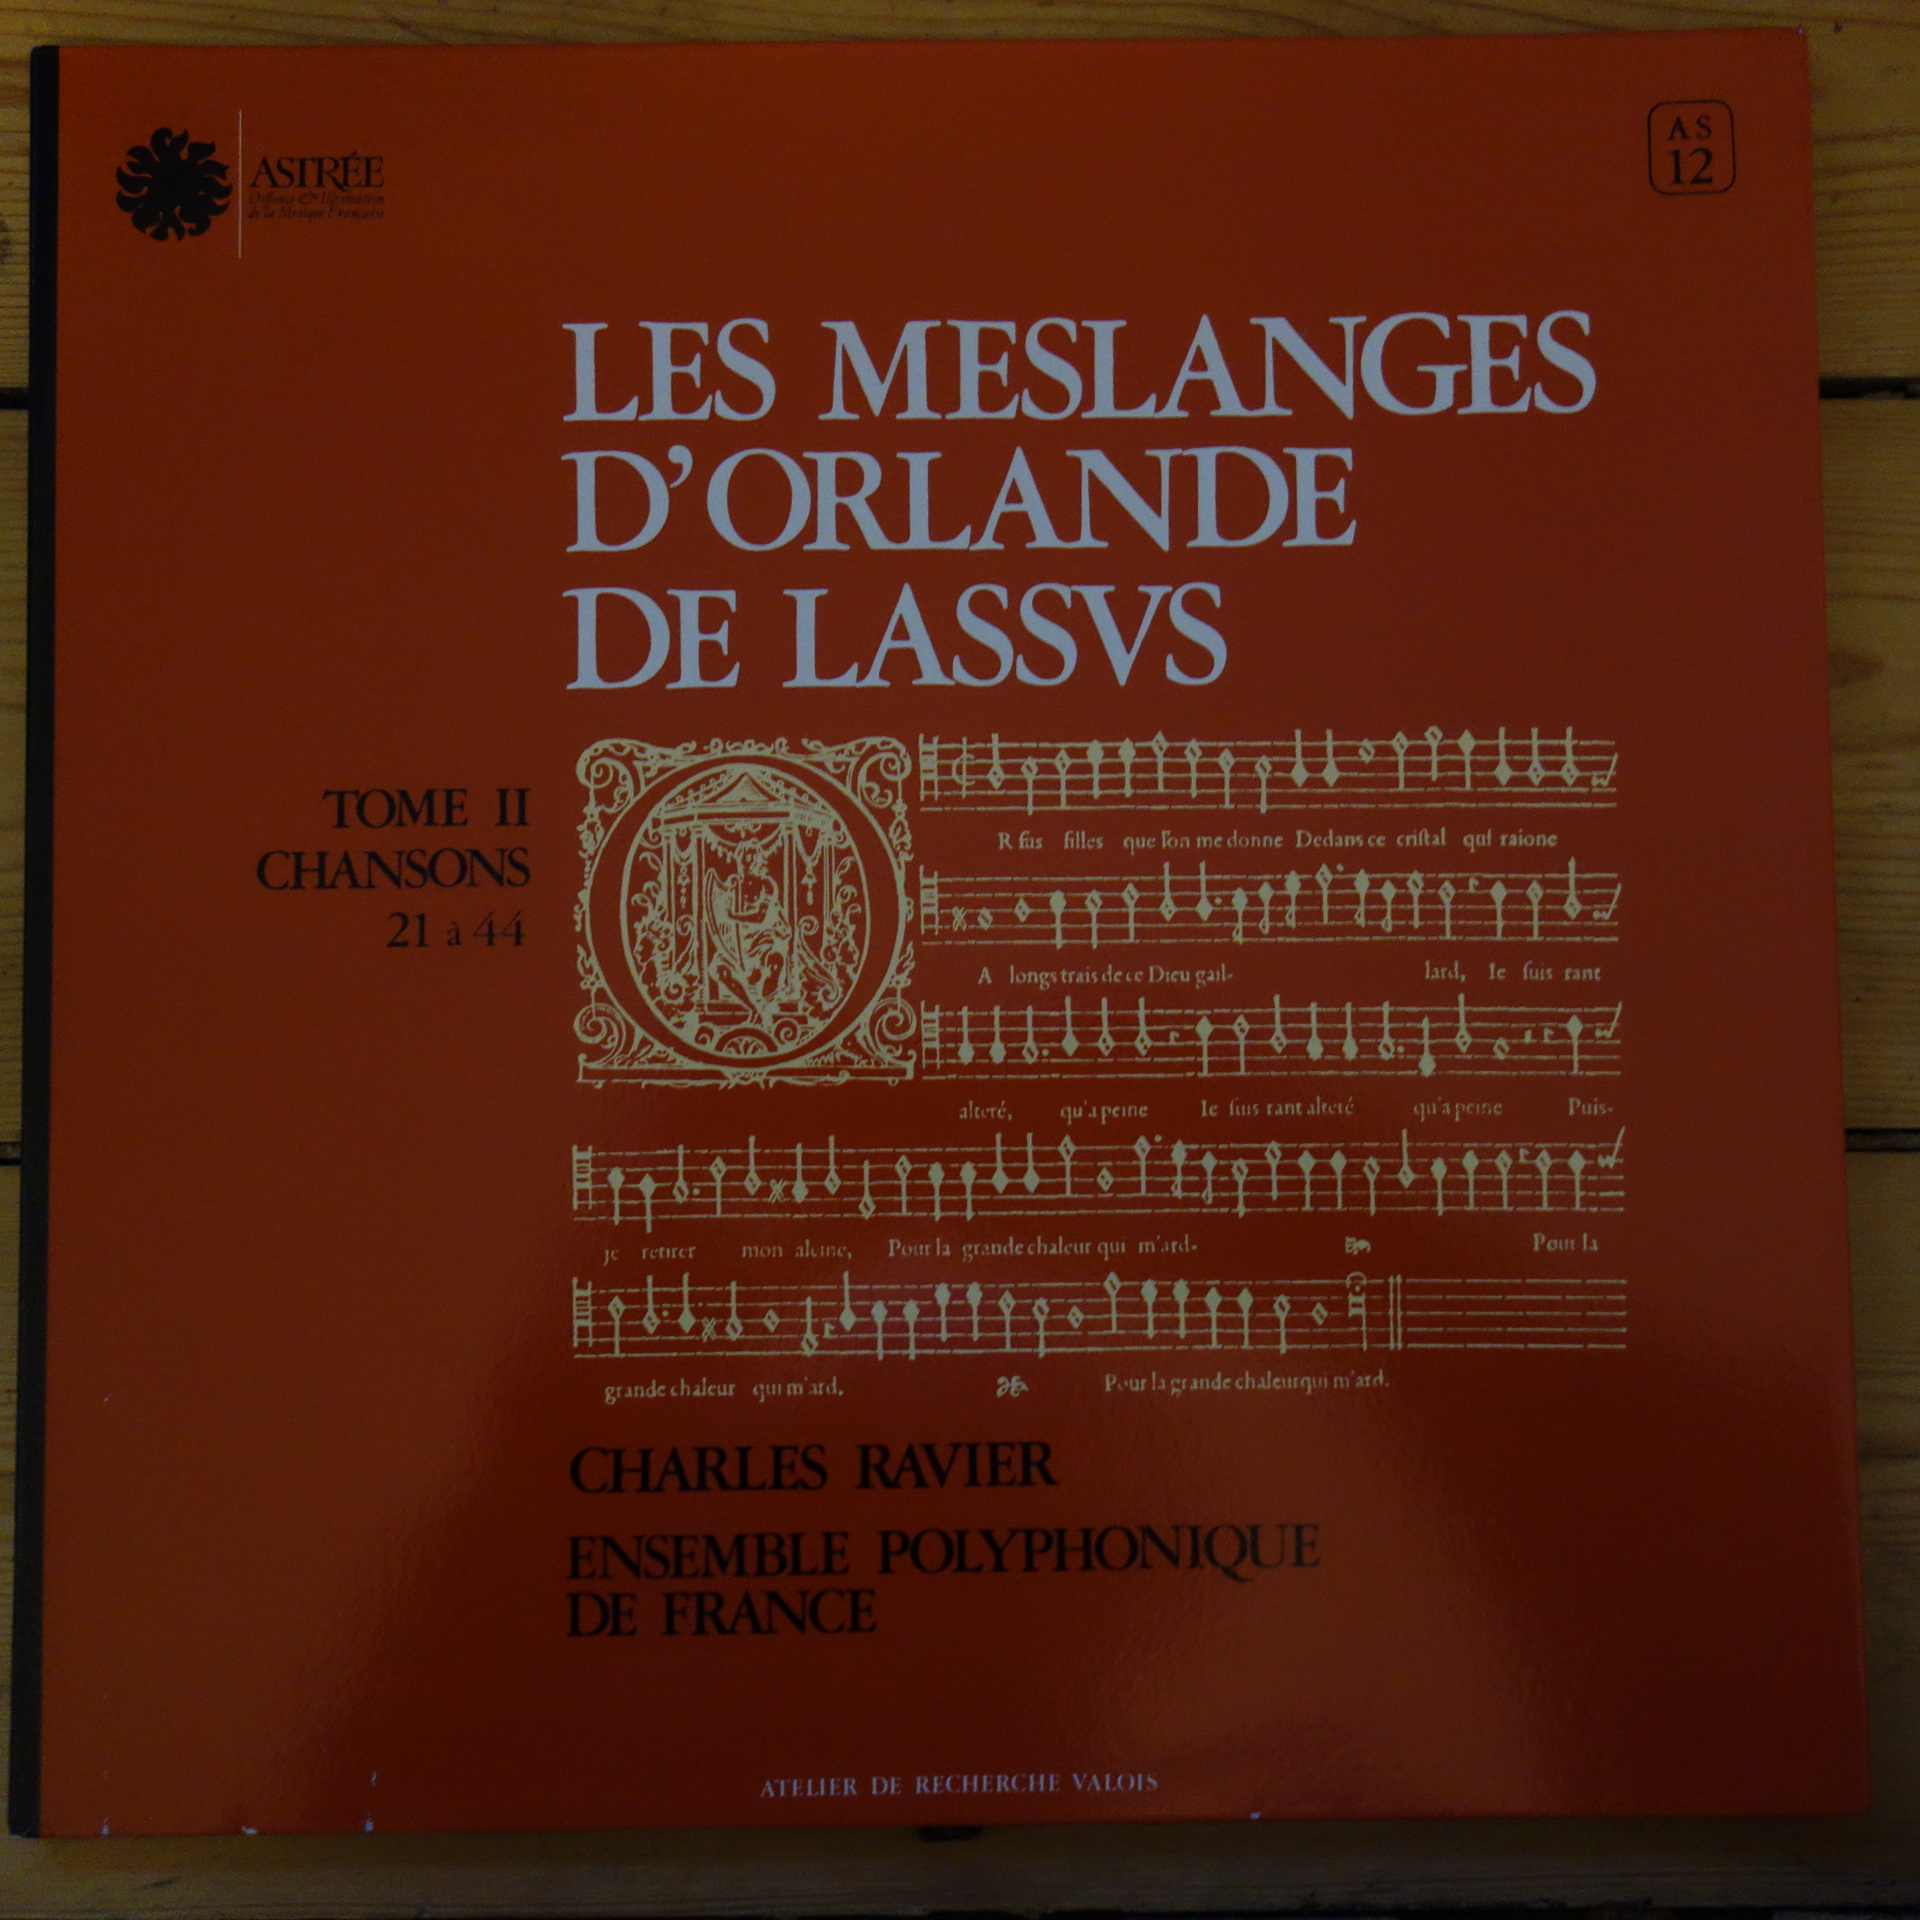 Astree AS 12 Lassus Melanges II Chansons 21-44